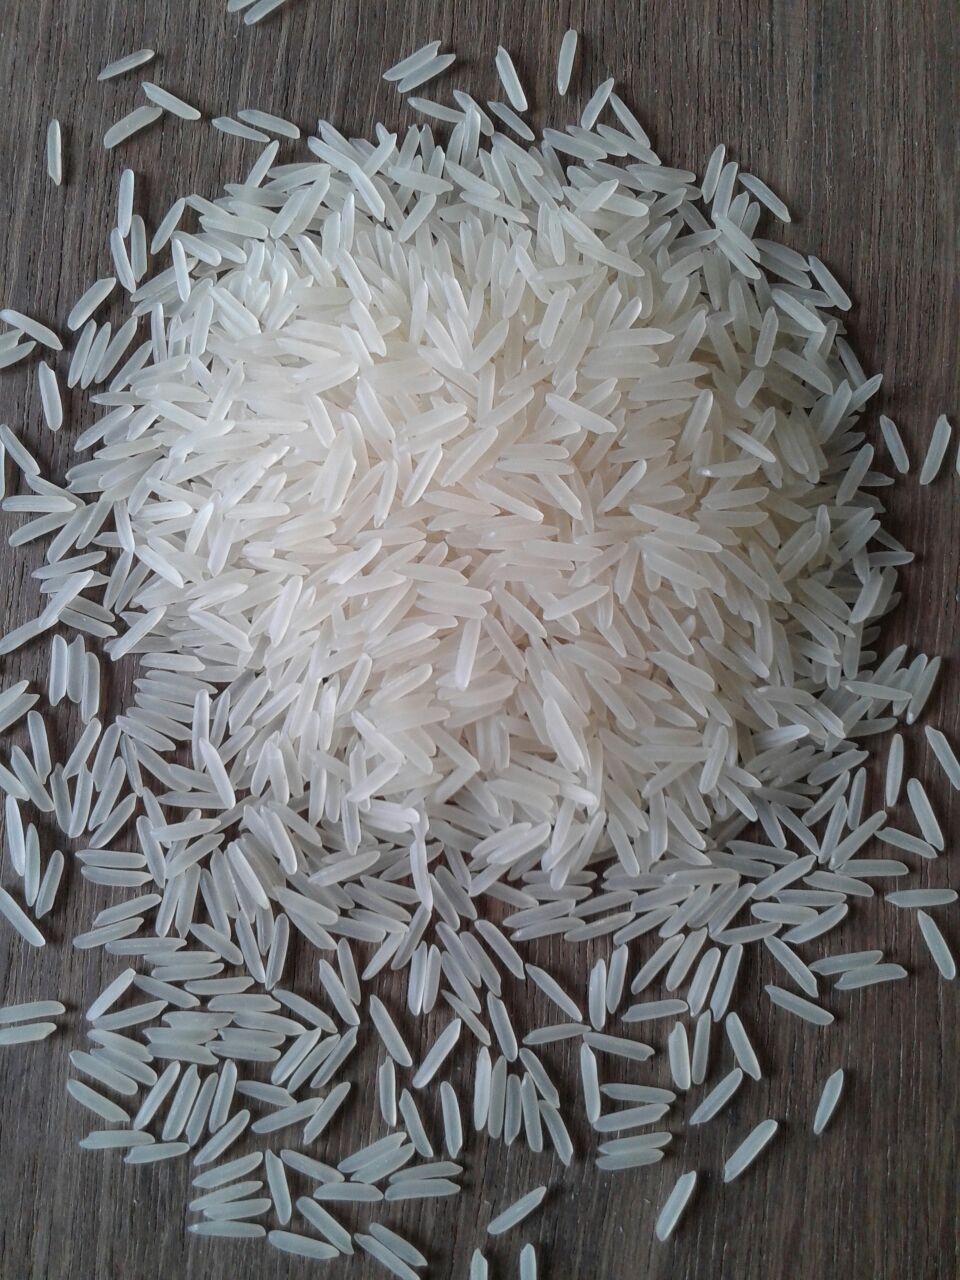 виды риса с фото с названиями